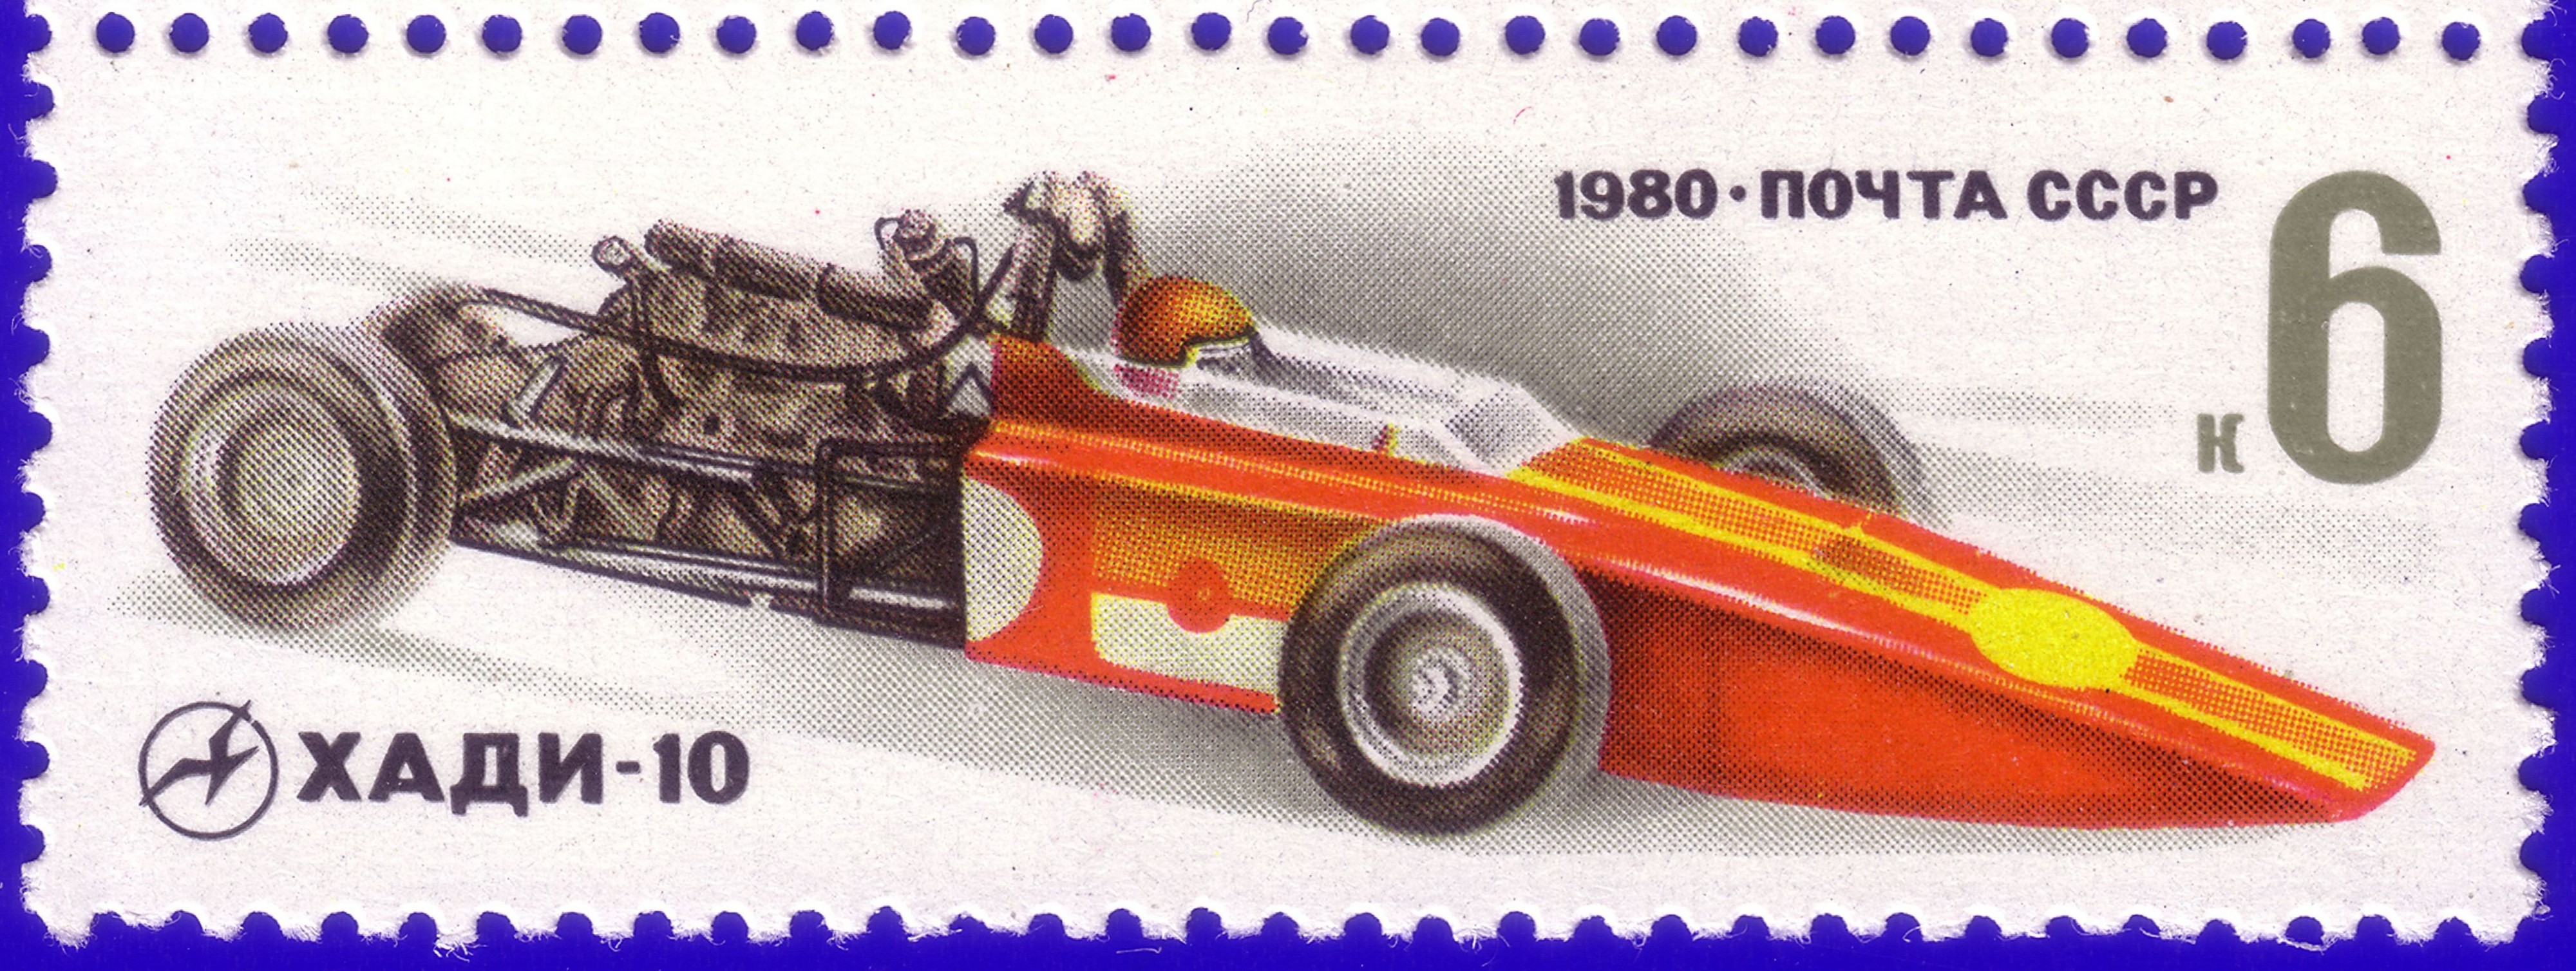 1980. Хади-10